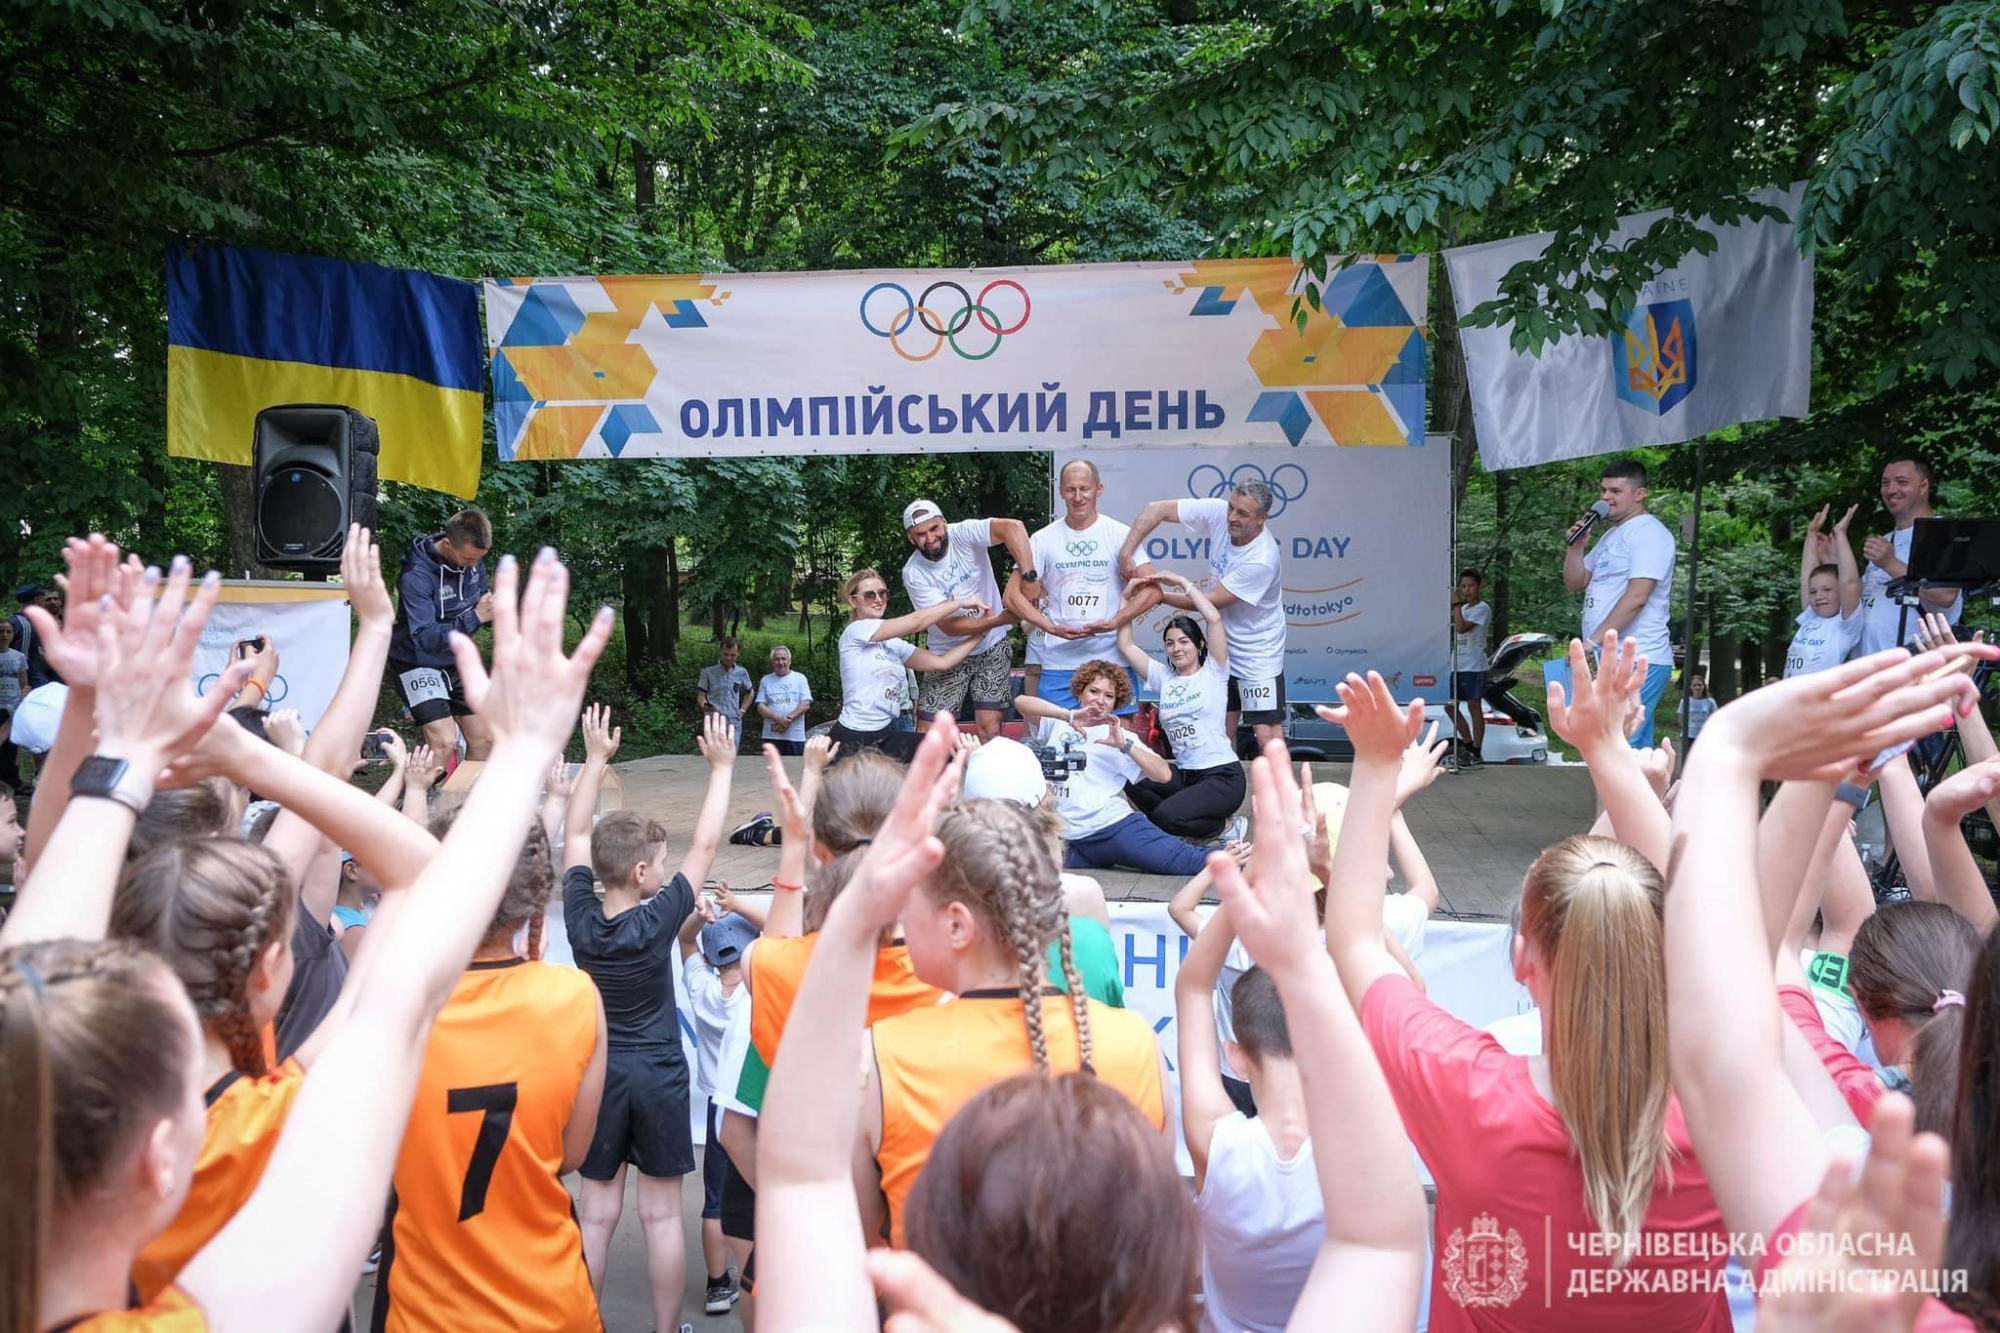 Пробіг із олімпійцями та розіграш призів: у Чернівцях влаштують спортивне свято